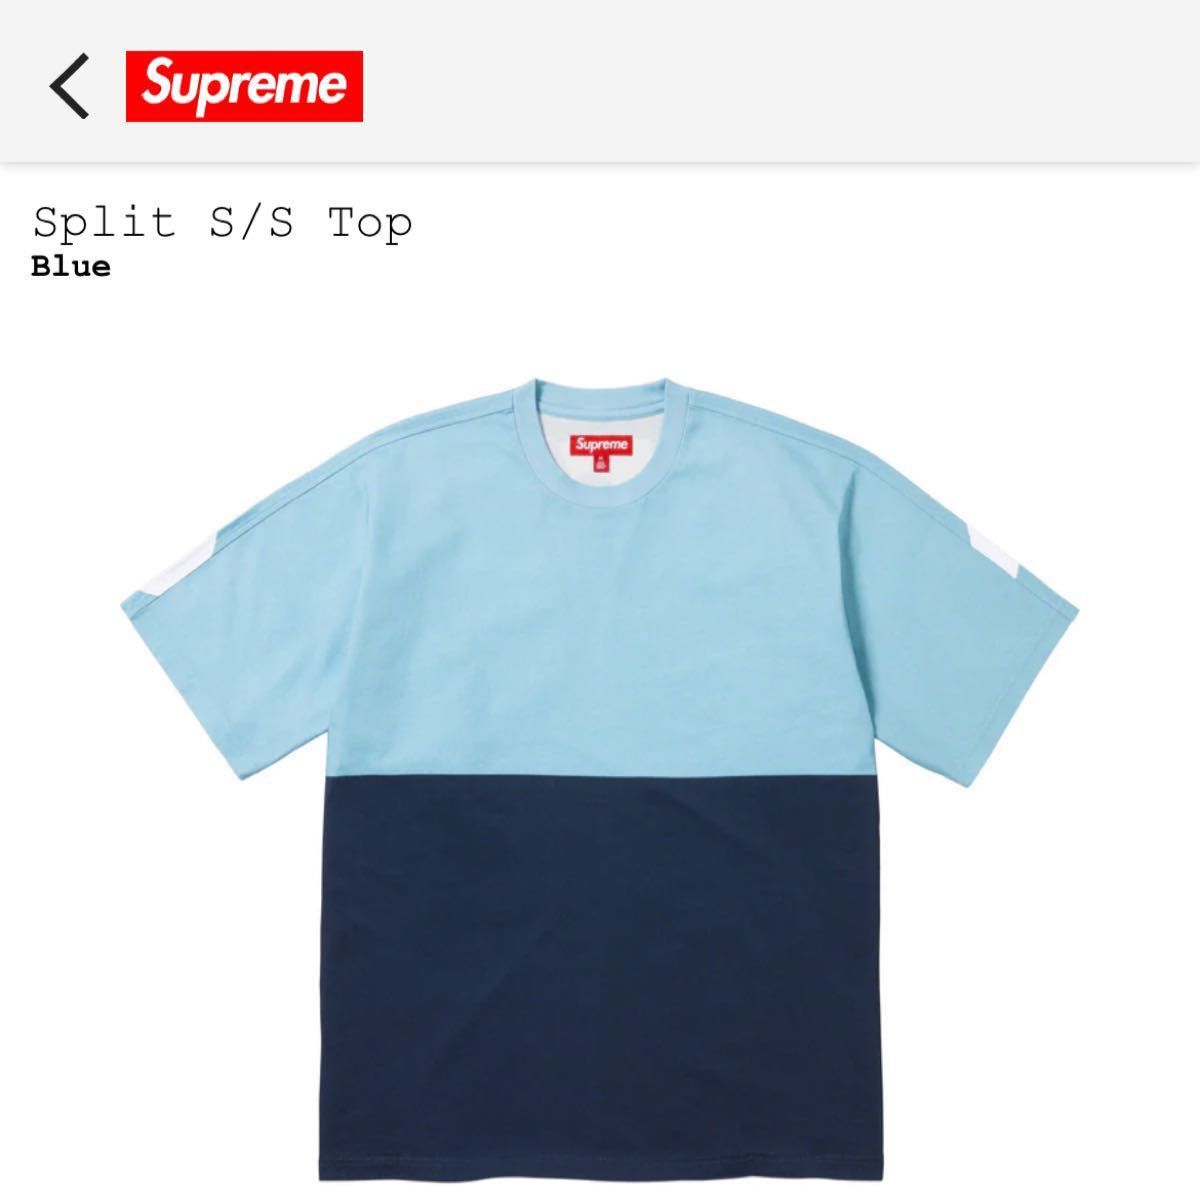 Supreme Split S/S Top 